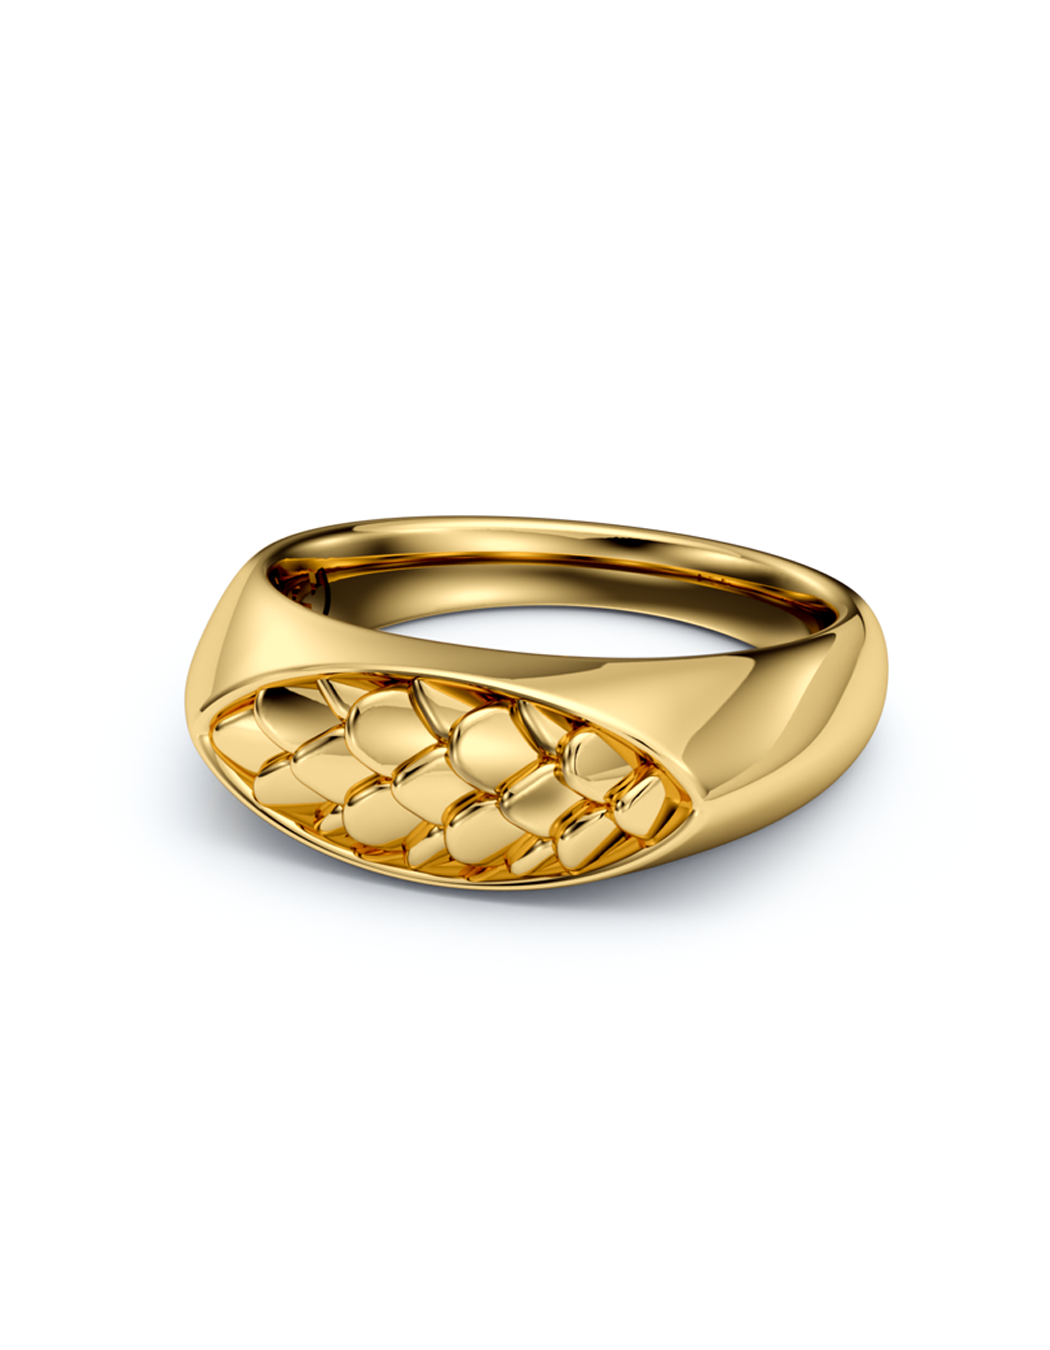 Upscale Iguana Signet Ring 14k / 18k Gold